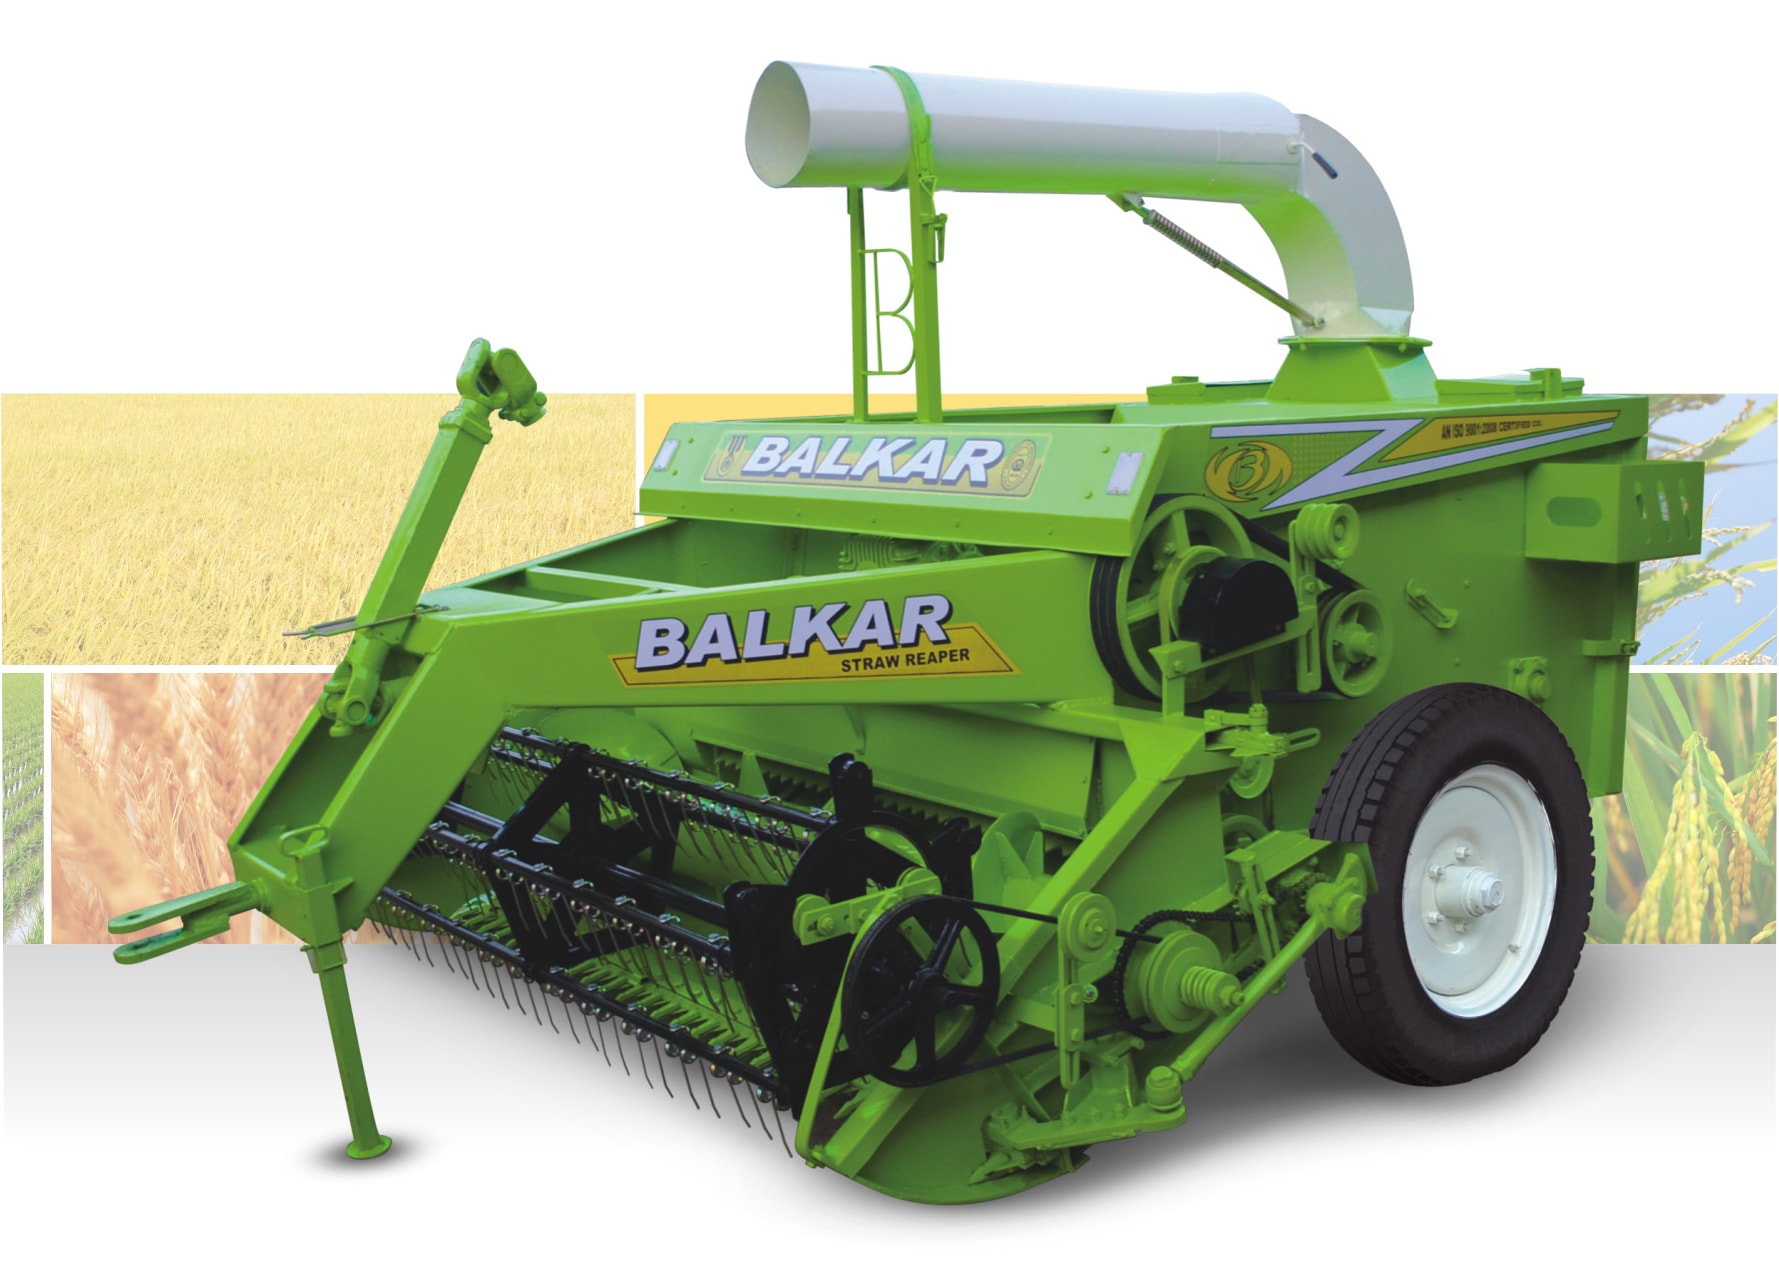 BALKAR B-470-STRAW-REAPER